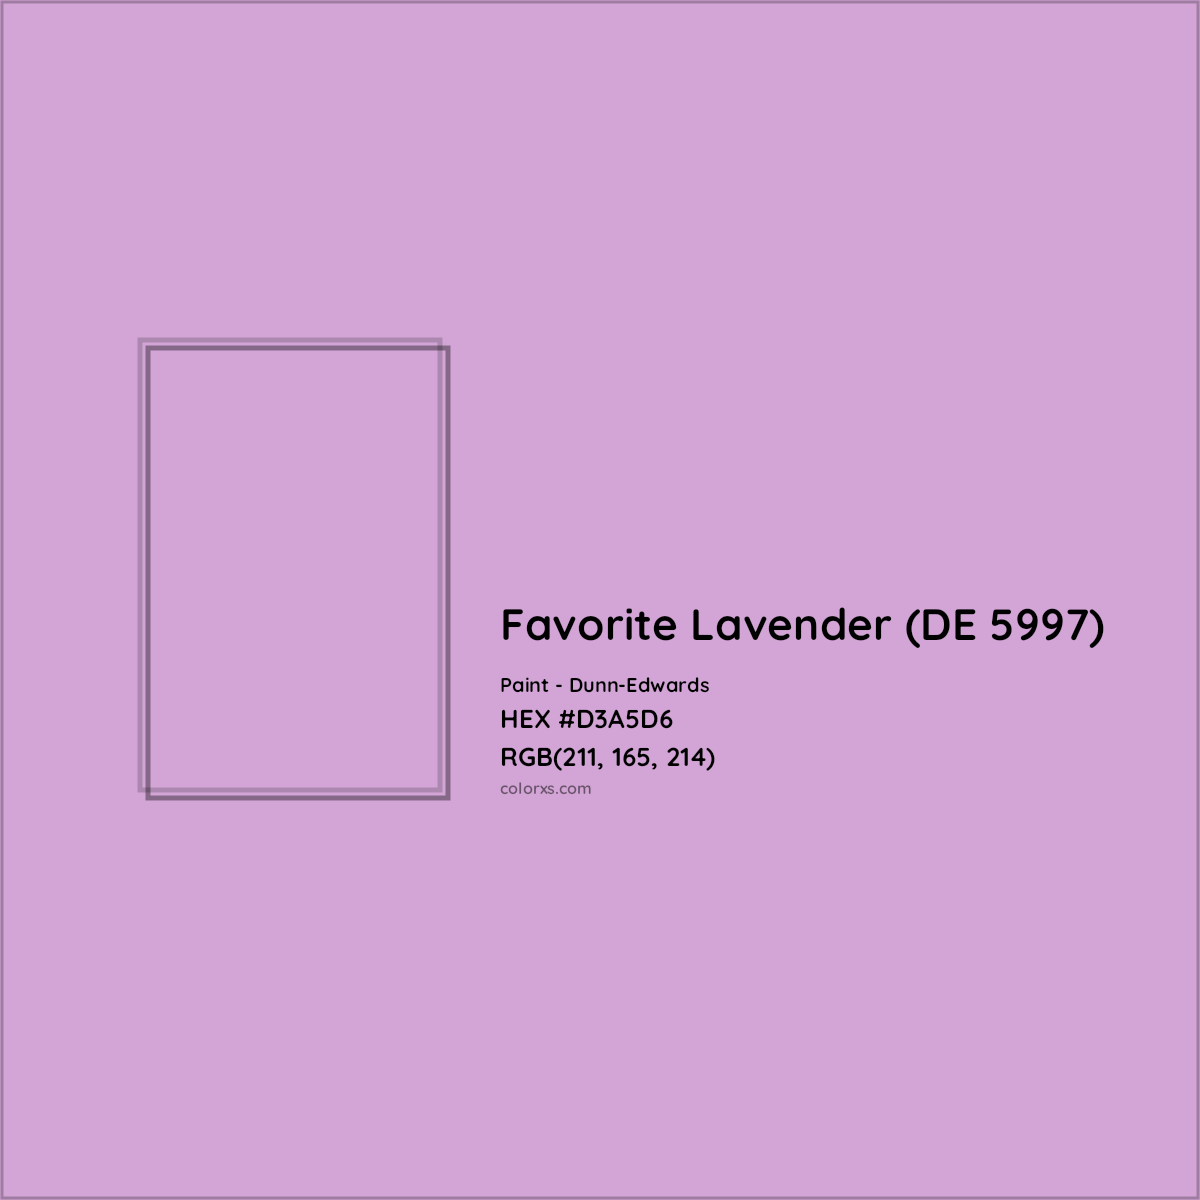 HEX #D3A5D6 Favorite Lavender (DE 5997) Paint Dunn-Edwards - Color Code